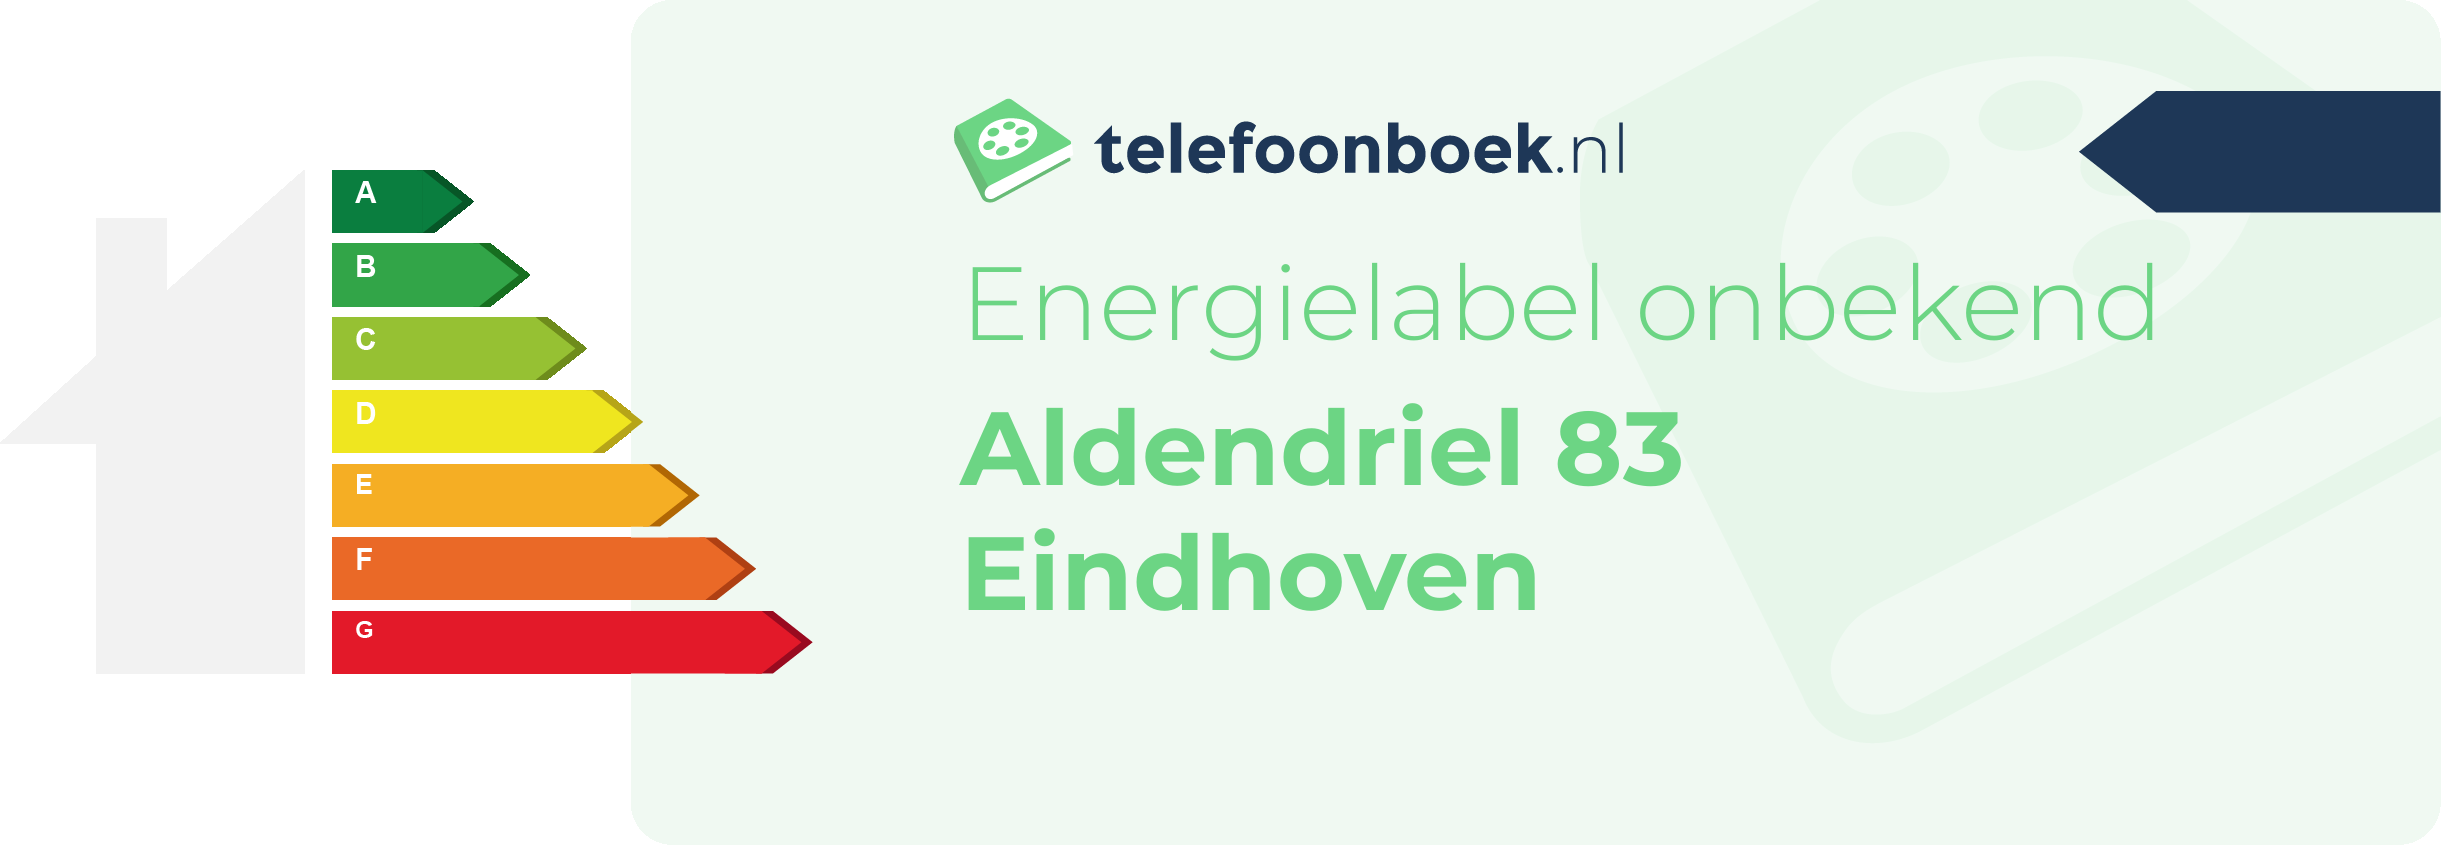 Energielabel Aldendriel 83 Eindhoven